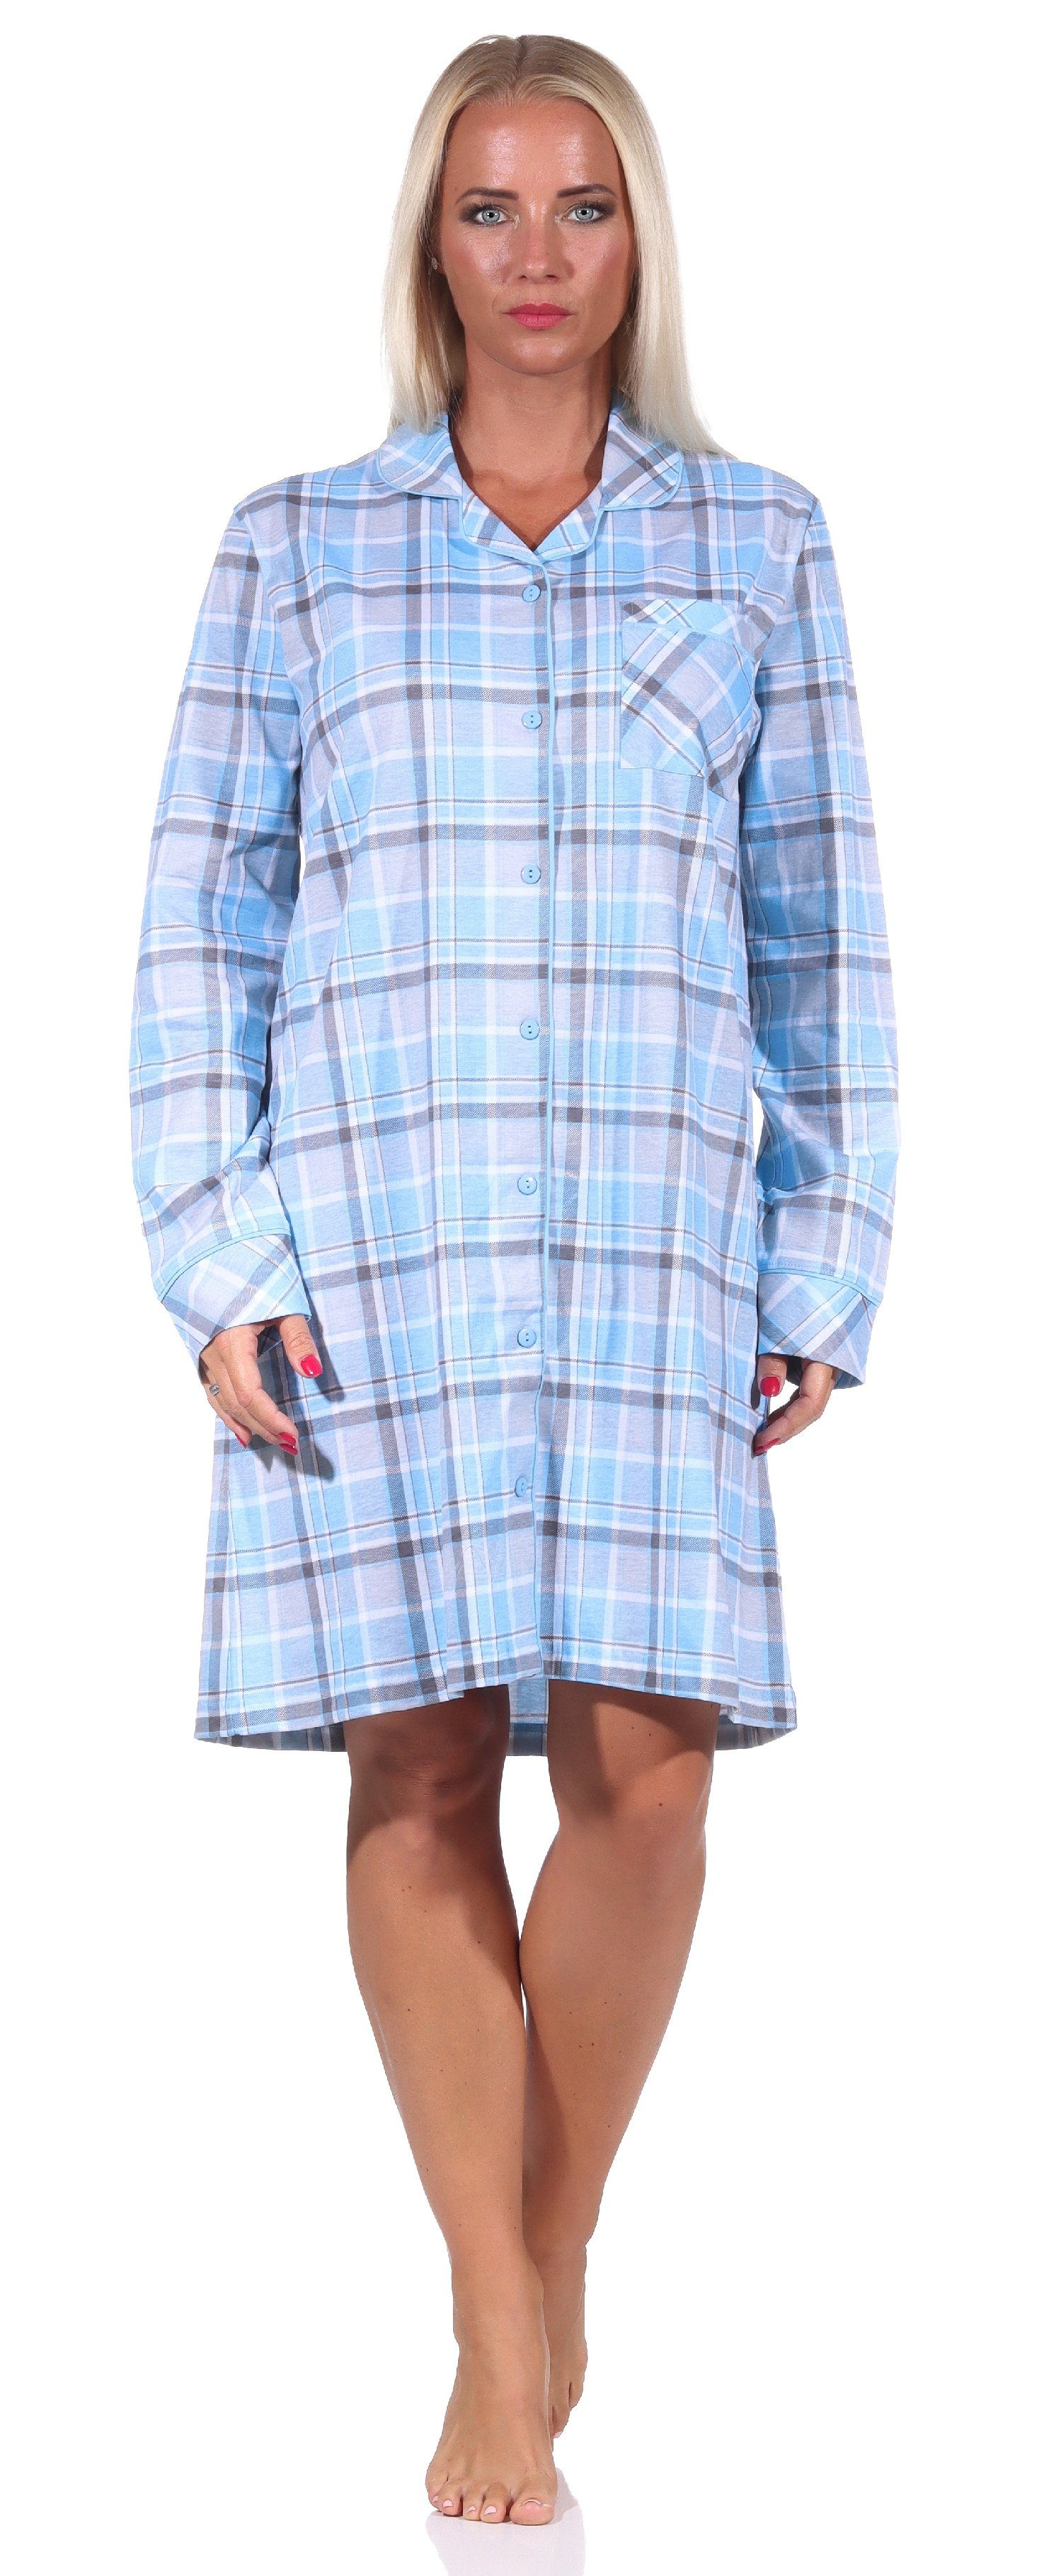 Normann Nachthemd Damen Nachthemd langarm in Karopotik zum knöpfen in Jersey Qualität hellblau